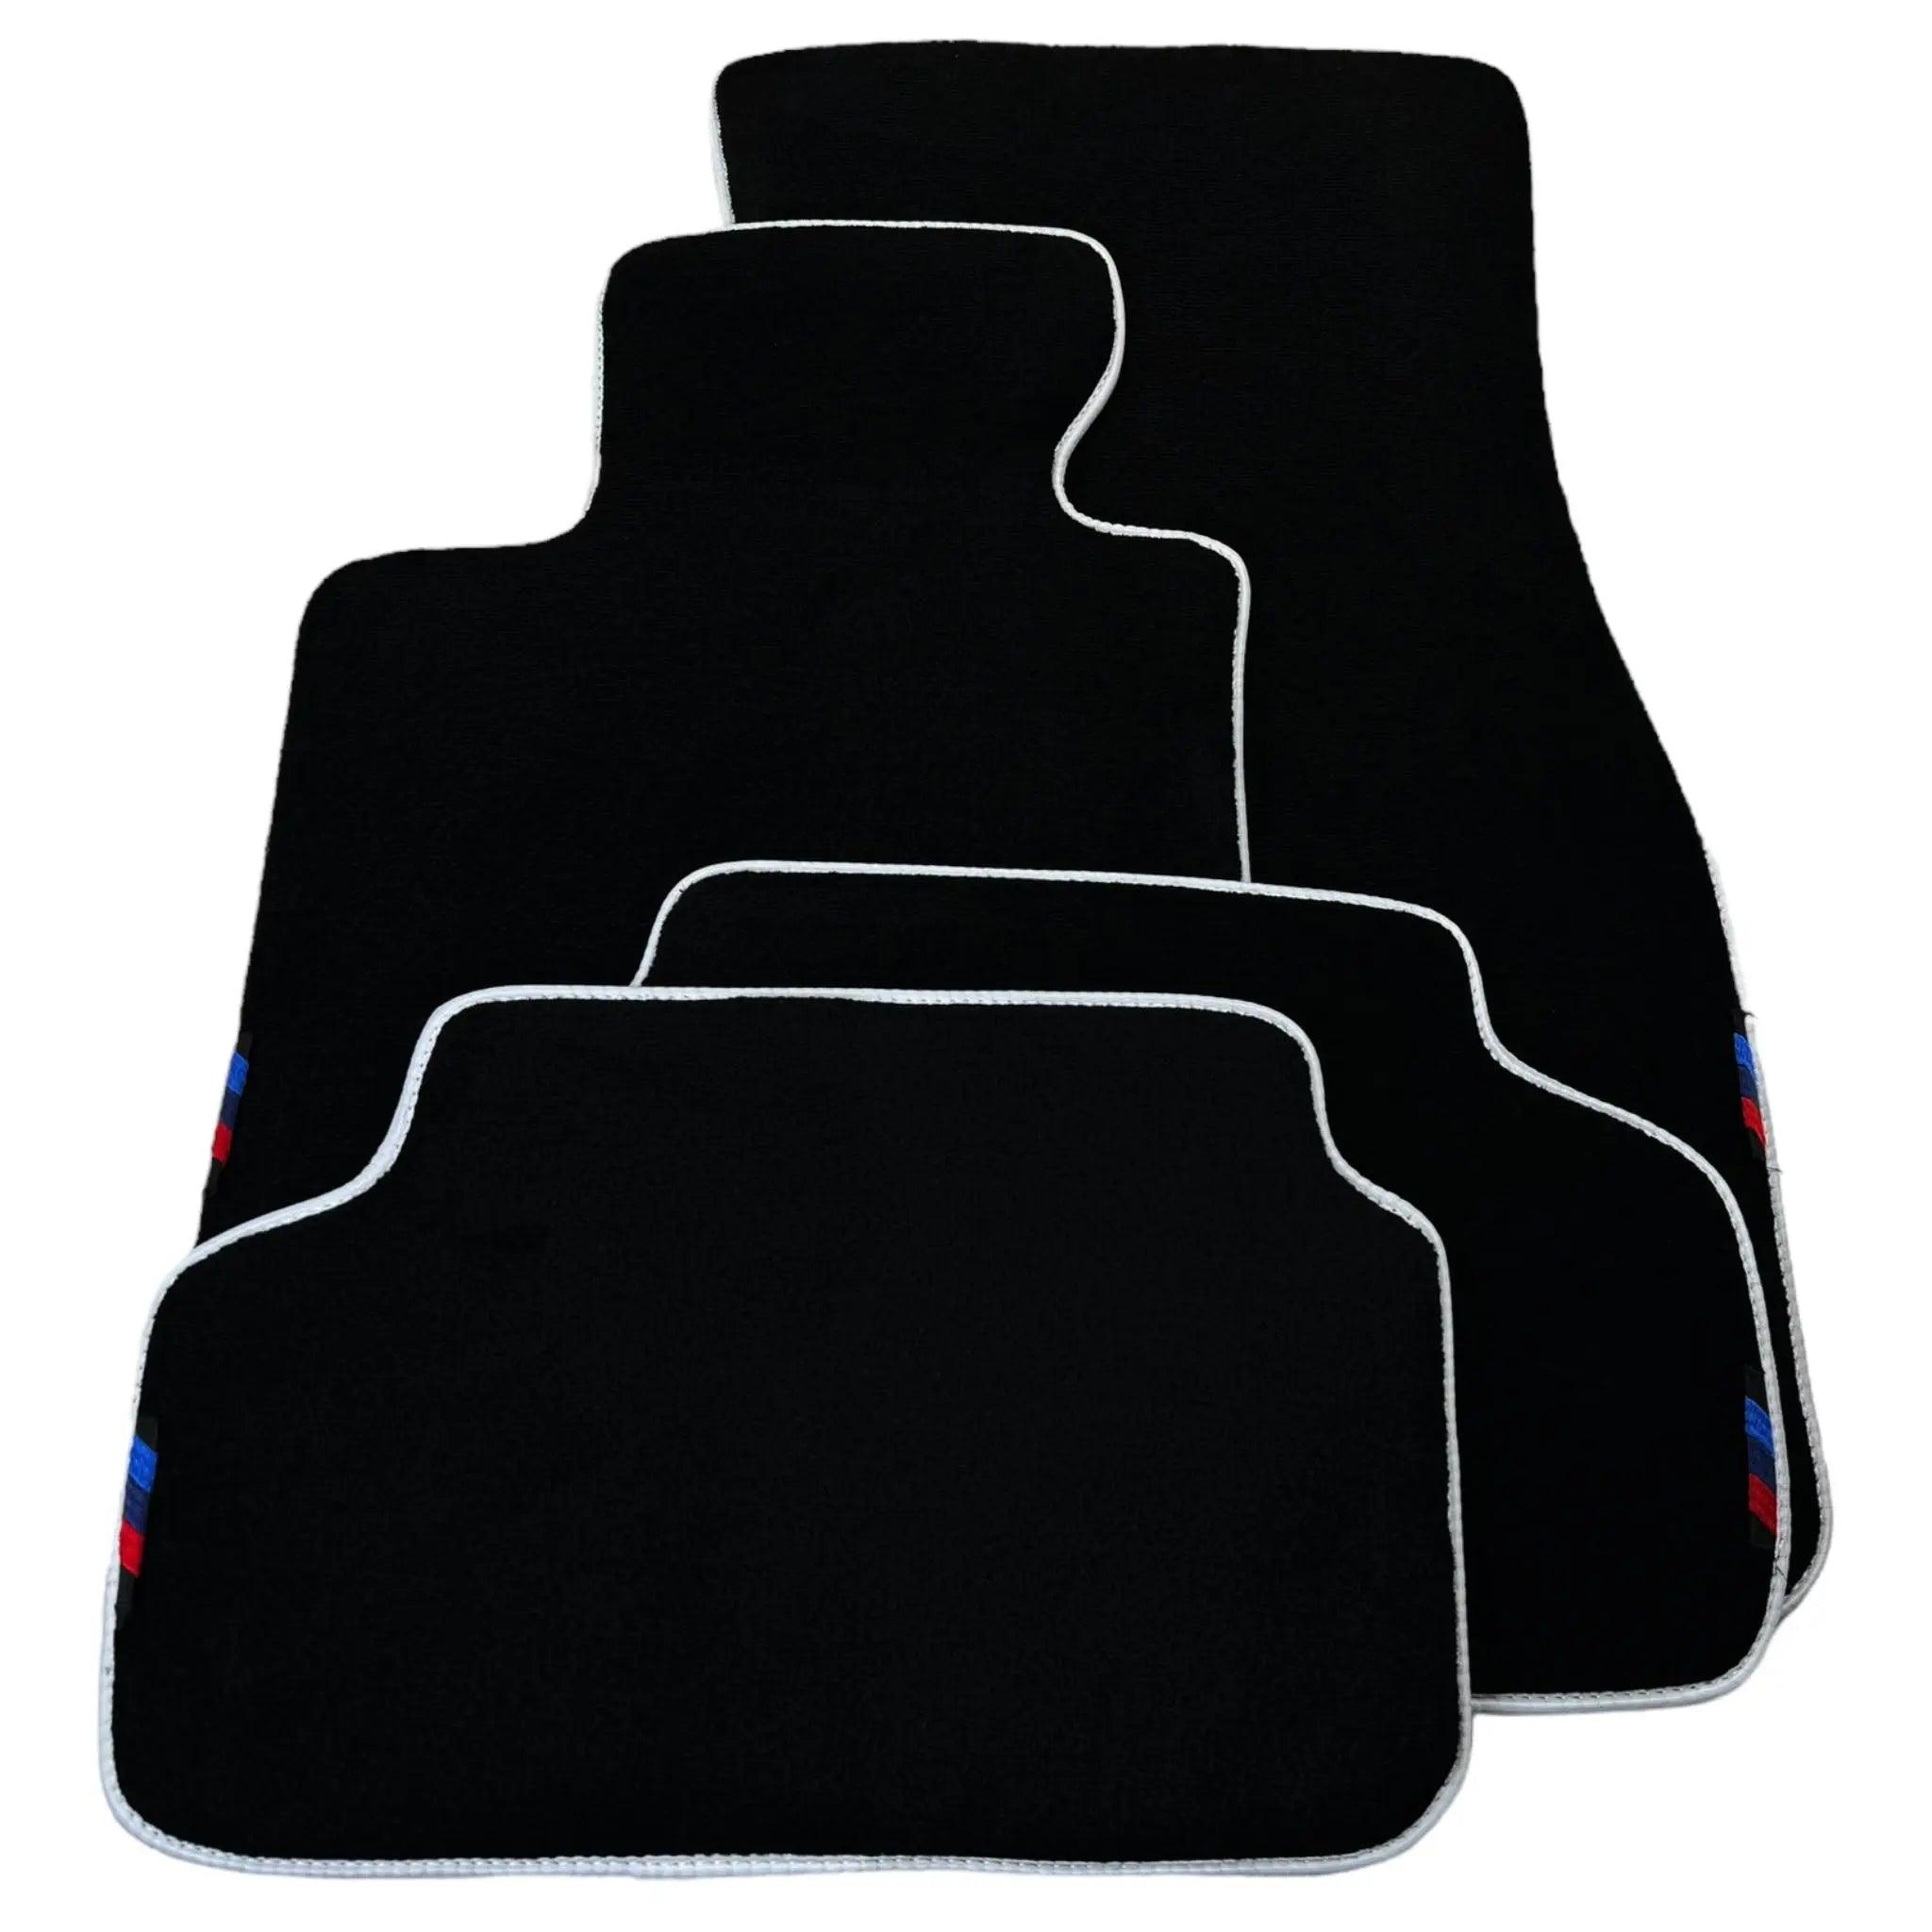 Black Floor Floor Mats For BMW X5 Series E53 | White Trim